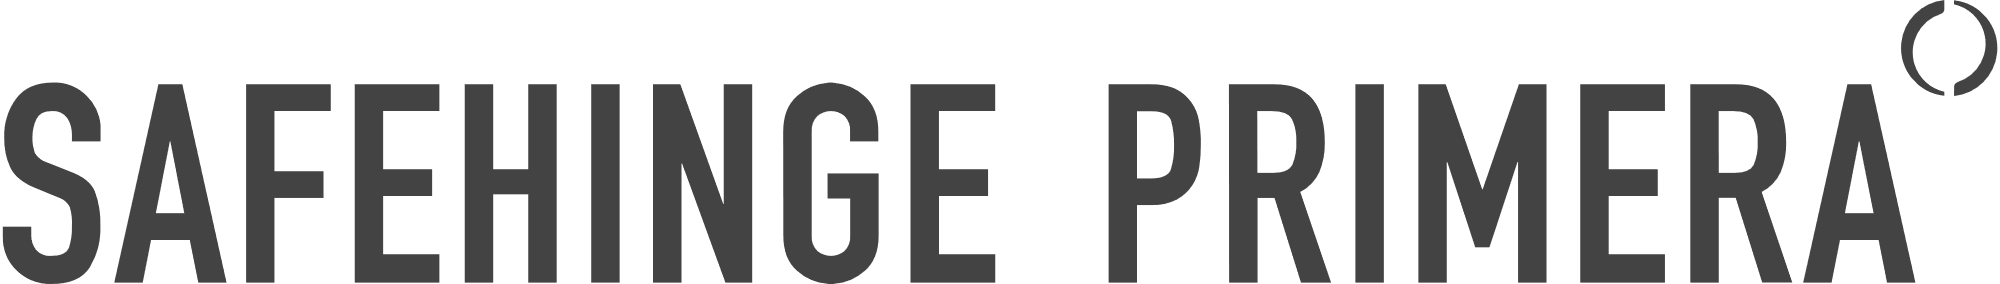 Safehinge-Primera-Logo.png